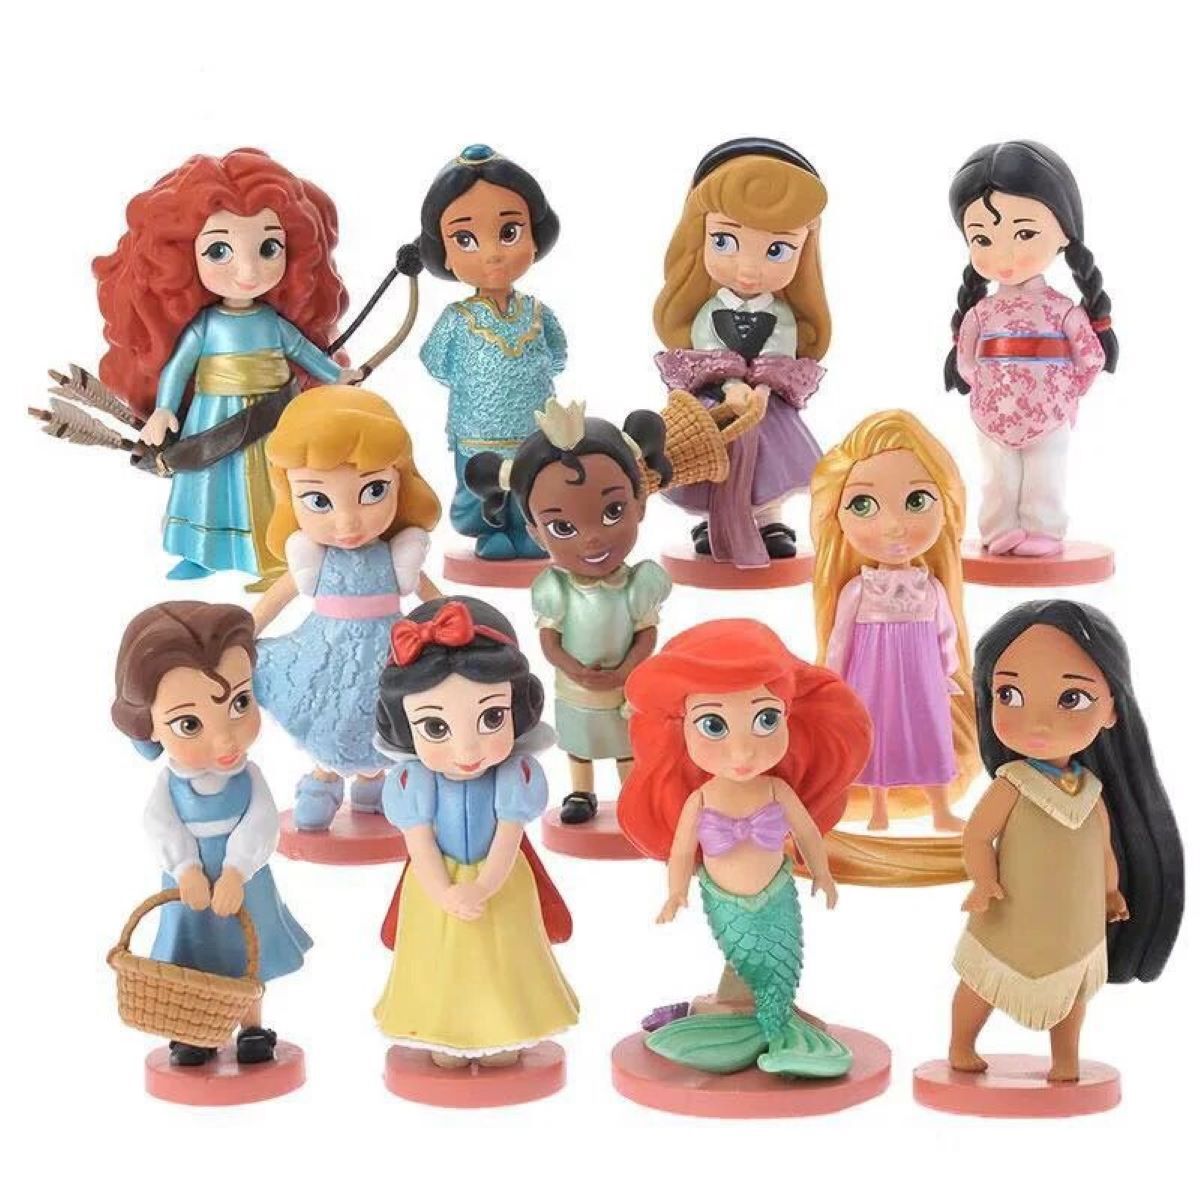 Купить куклы из мультиков. Куклы принцессы Дисней Моана мини. Фигурки Disney Animators collection. Набор фигурок Рапунцель Disney. Куклы Disney Моана и Белоснежка.